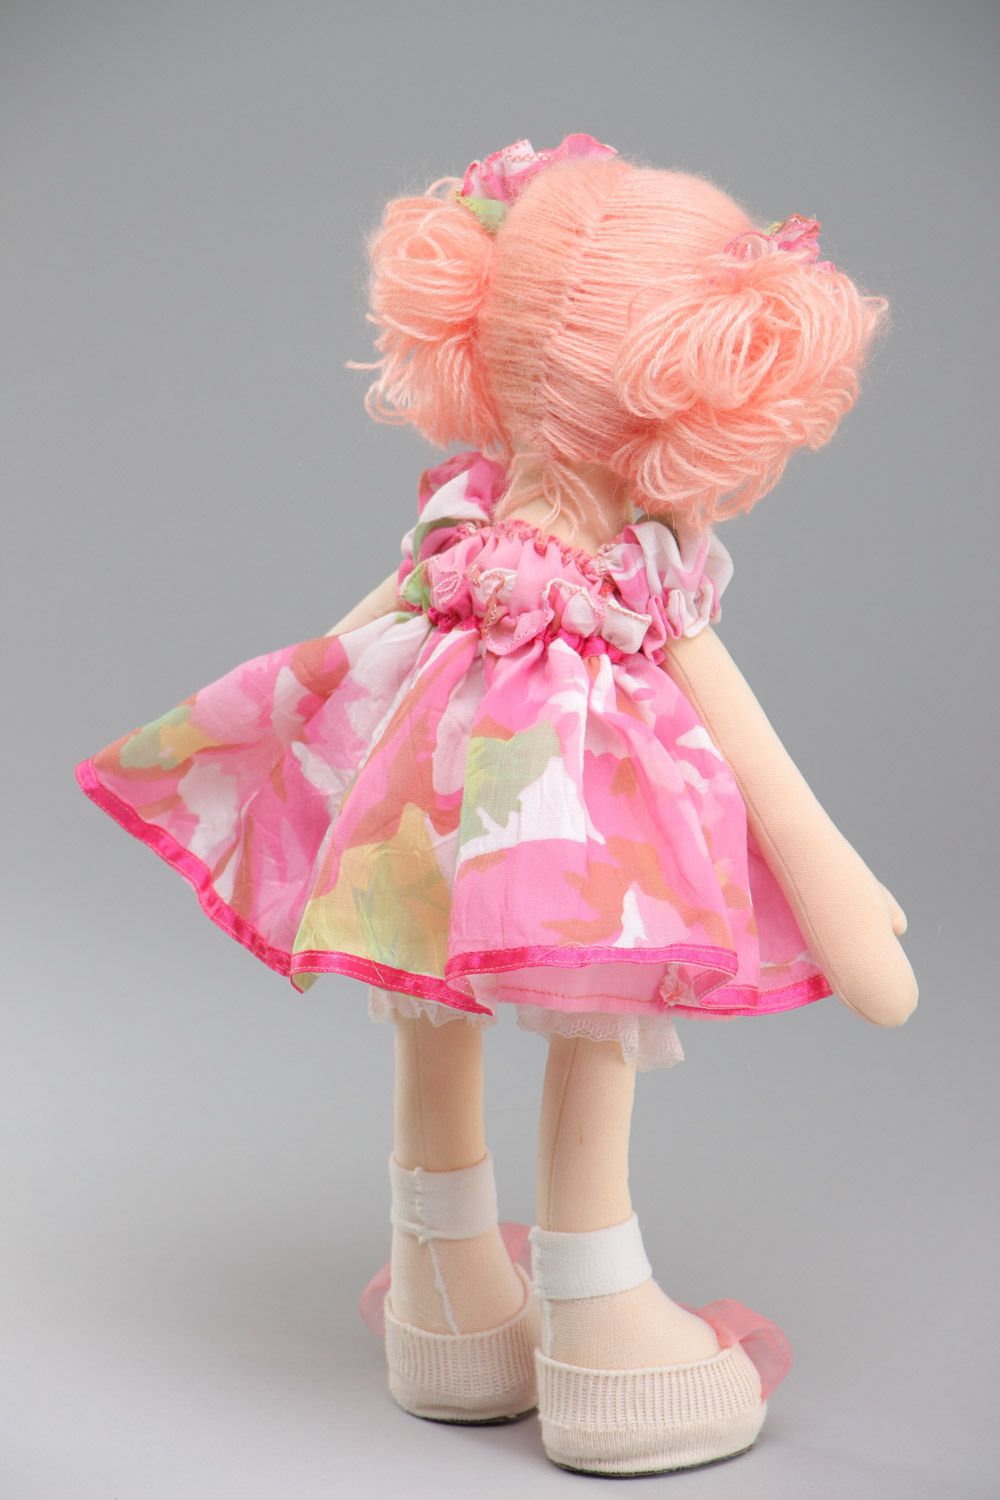 Авторская кукла игровая розовая в платье ручной работы из ткани среднего размера фото 4